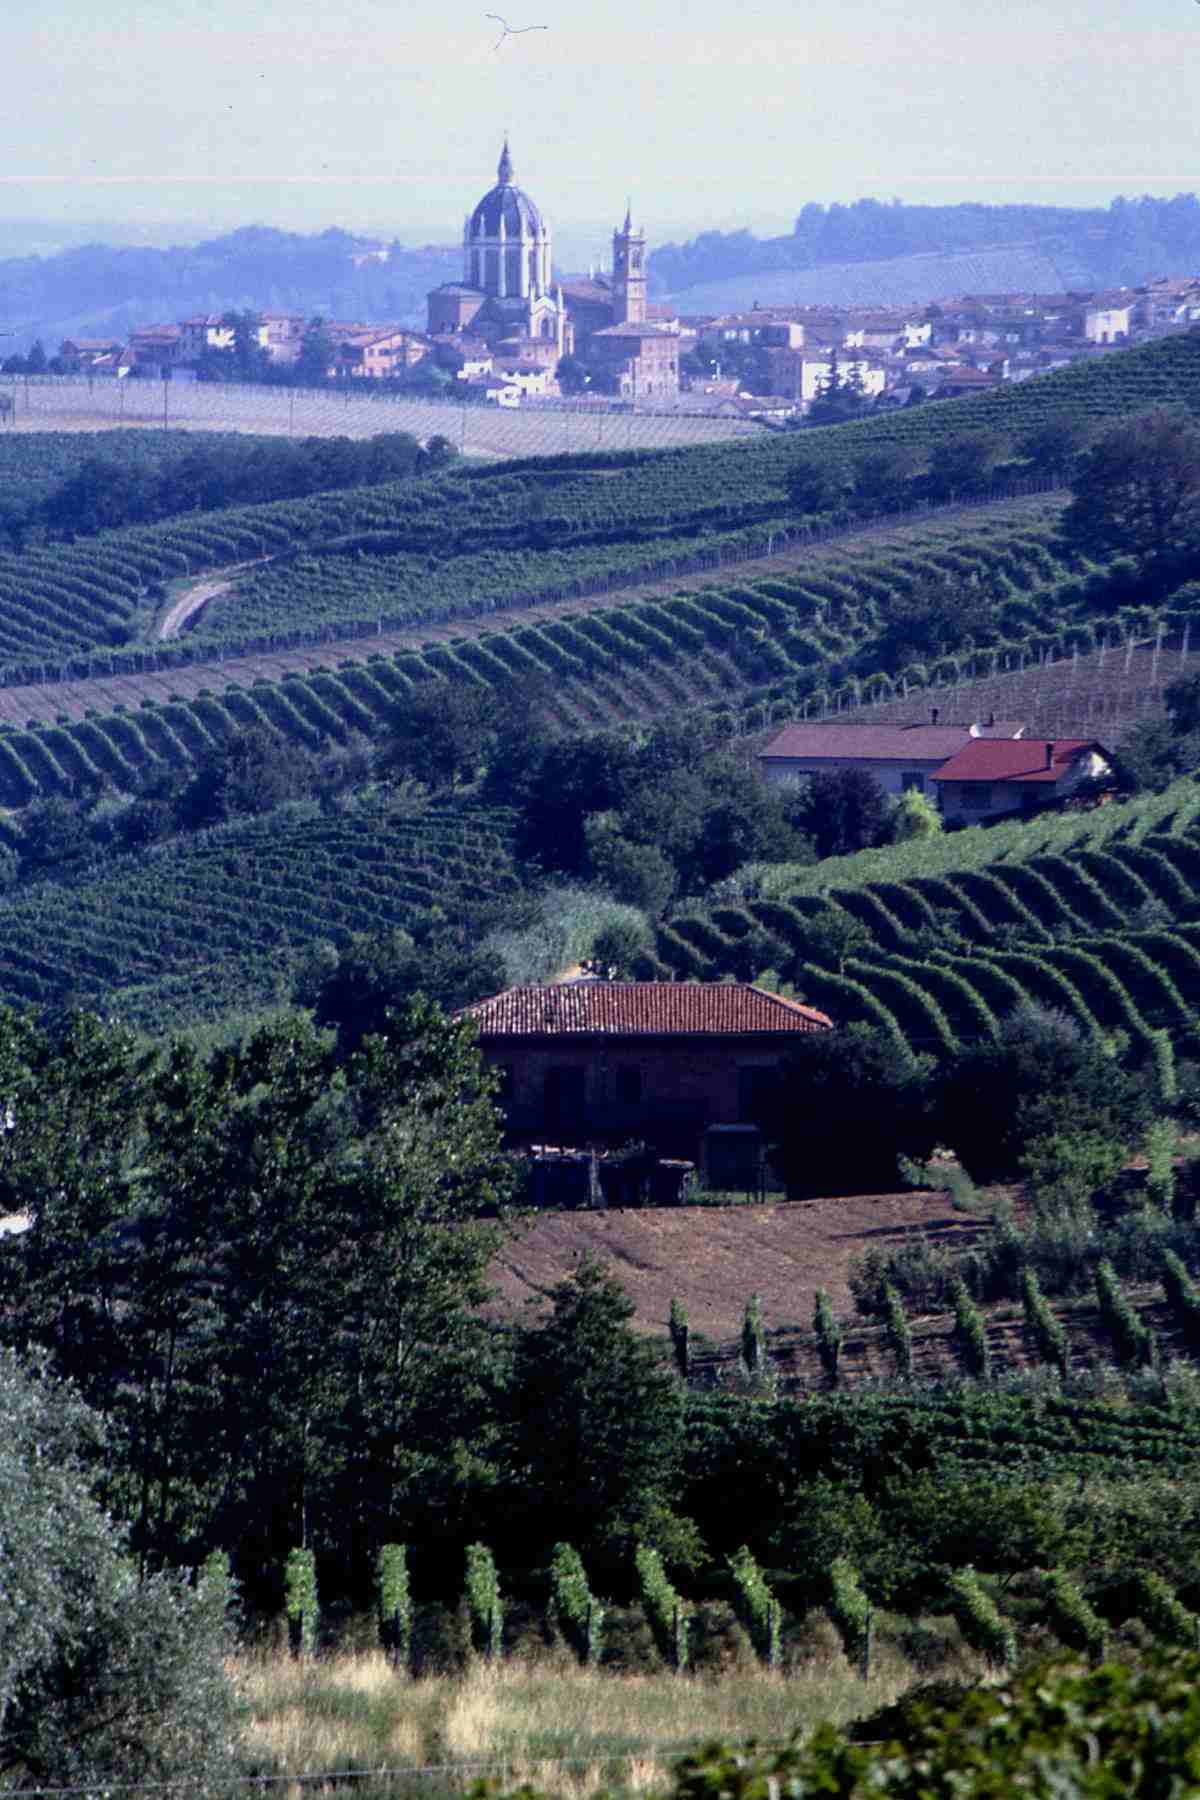 Veduta dell'abitato di Fontanile (AT) immerso in uno straordinario paesaggio viticolo